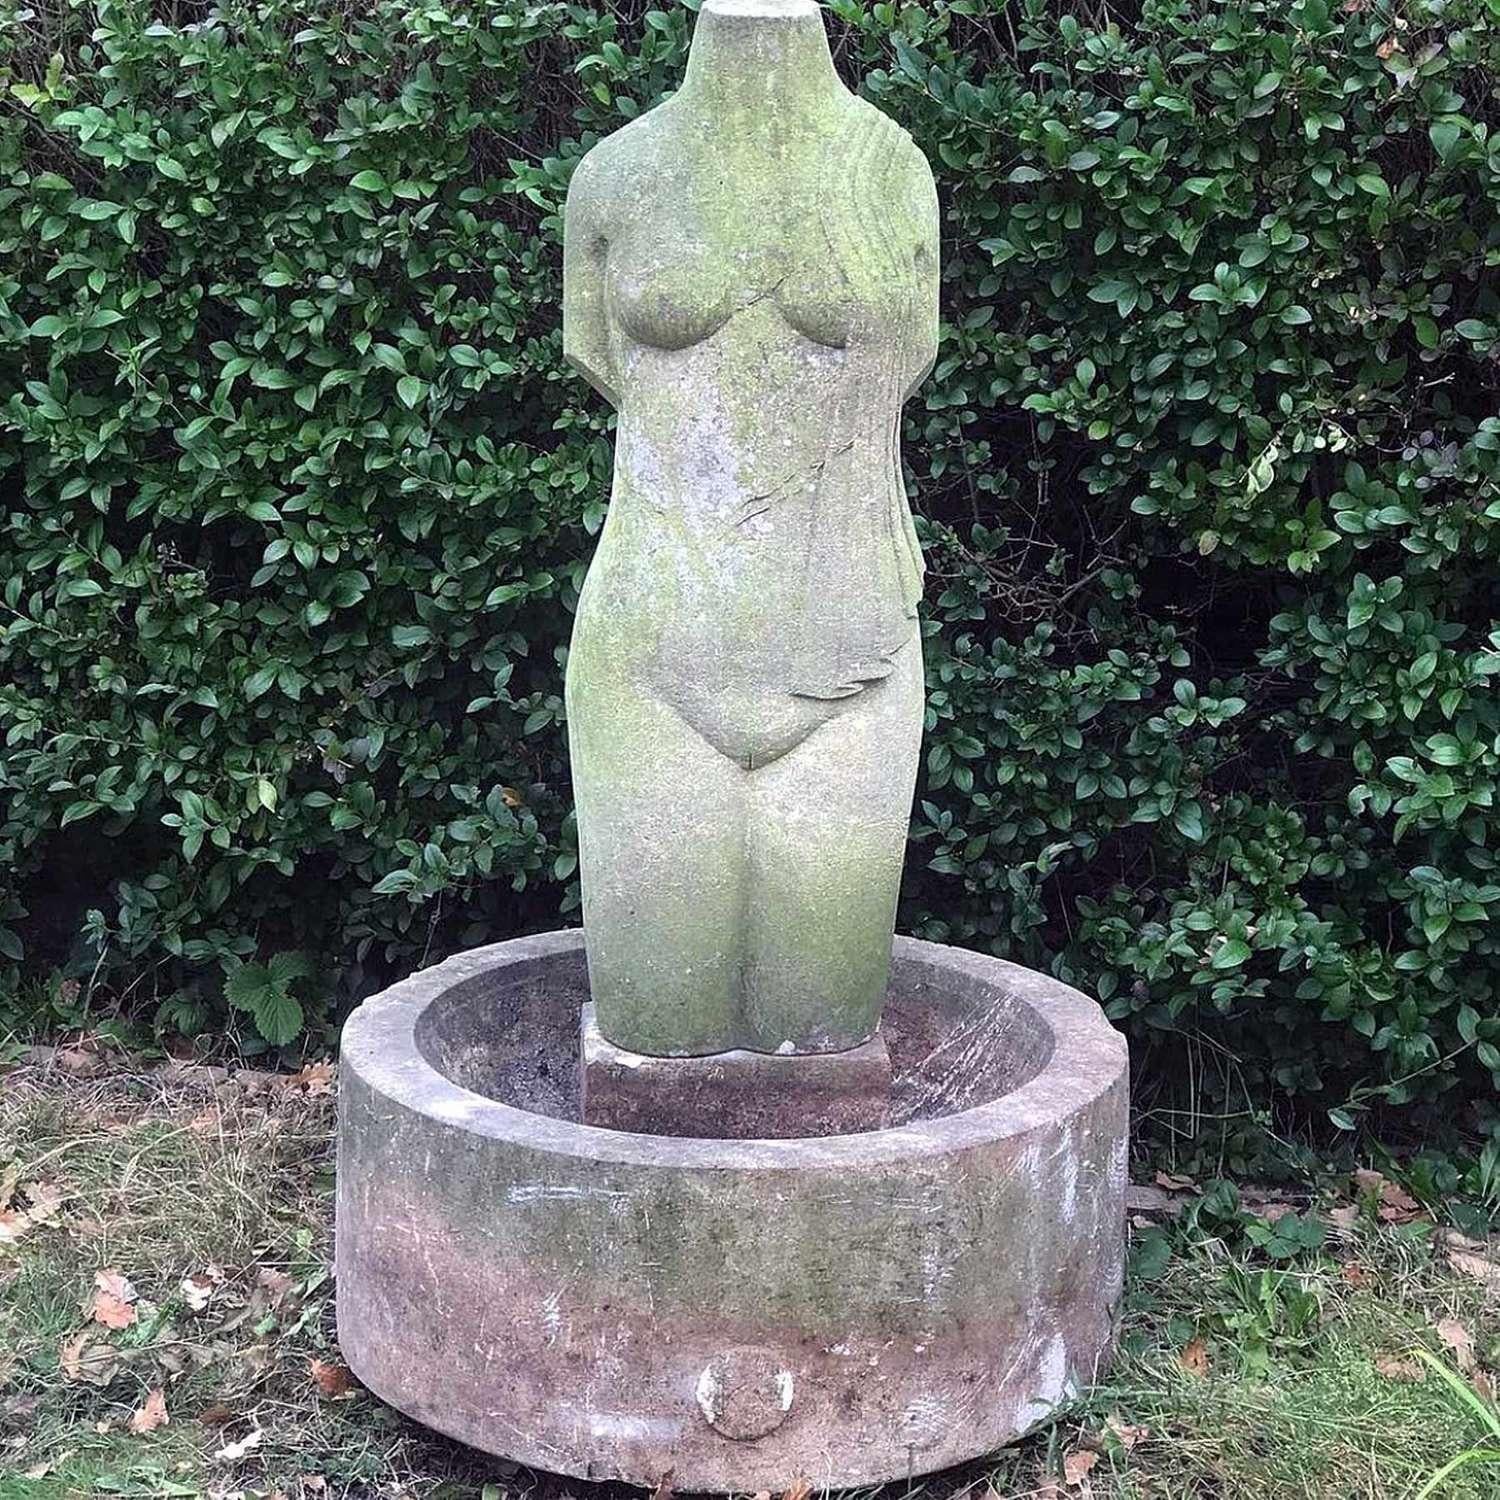 Als einsame Skulptur in Ihrem Garten ist sie ein wahres Schmuckstück, aber stellen Sie sich jetzt vor, dass sie von allen Vögeln besucht wird, um zu baden und zu trinken.

1960's Carved Stein halb drapiert weiblichen Torso und Basis mit Bildhauer